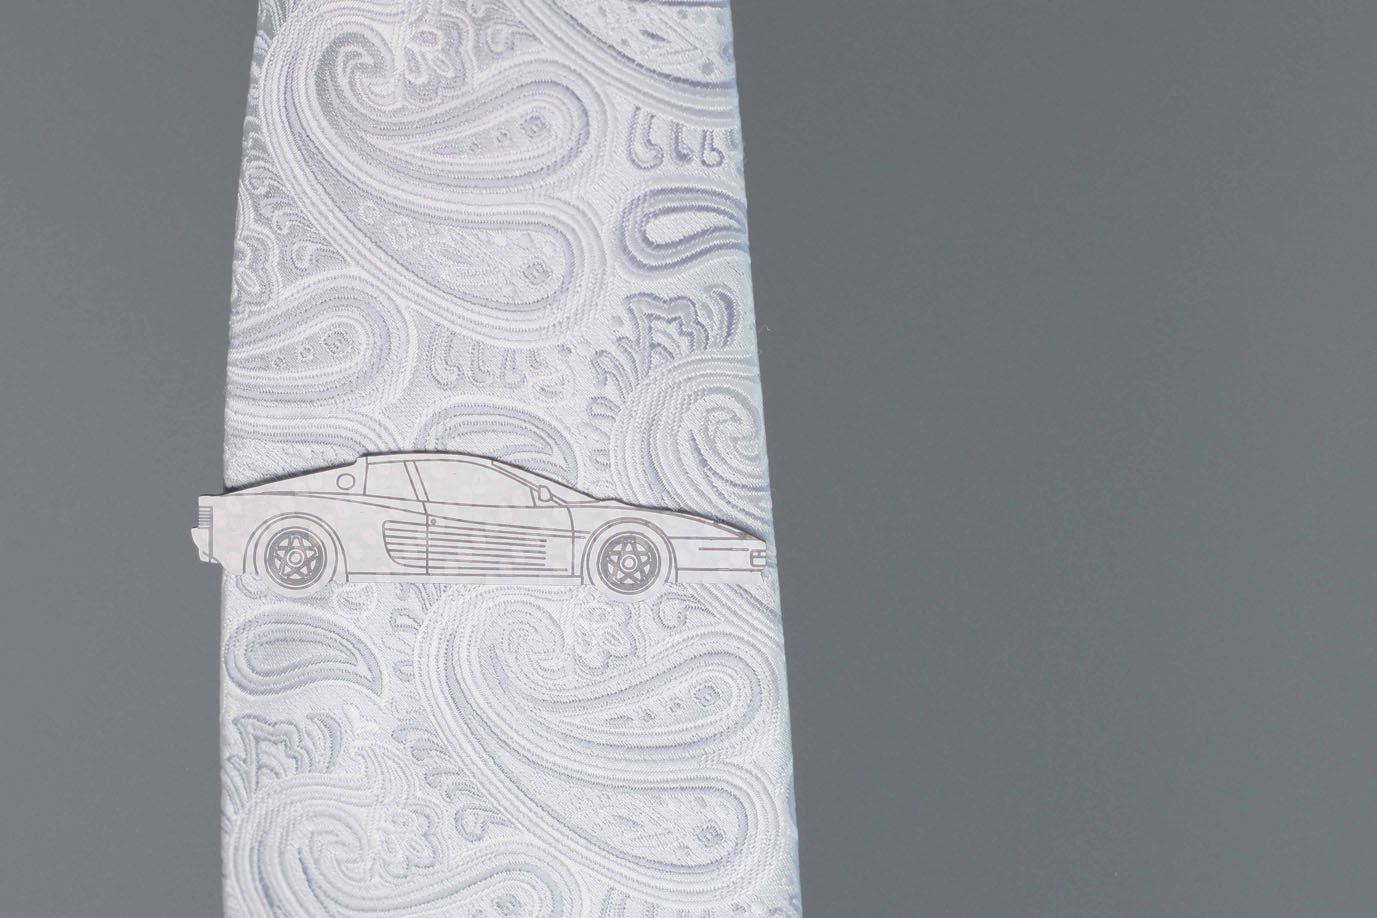 Testarossa carbon fiber tie clip, reflecting light